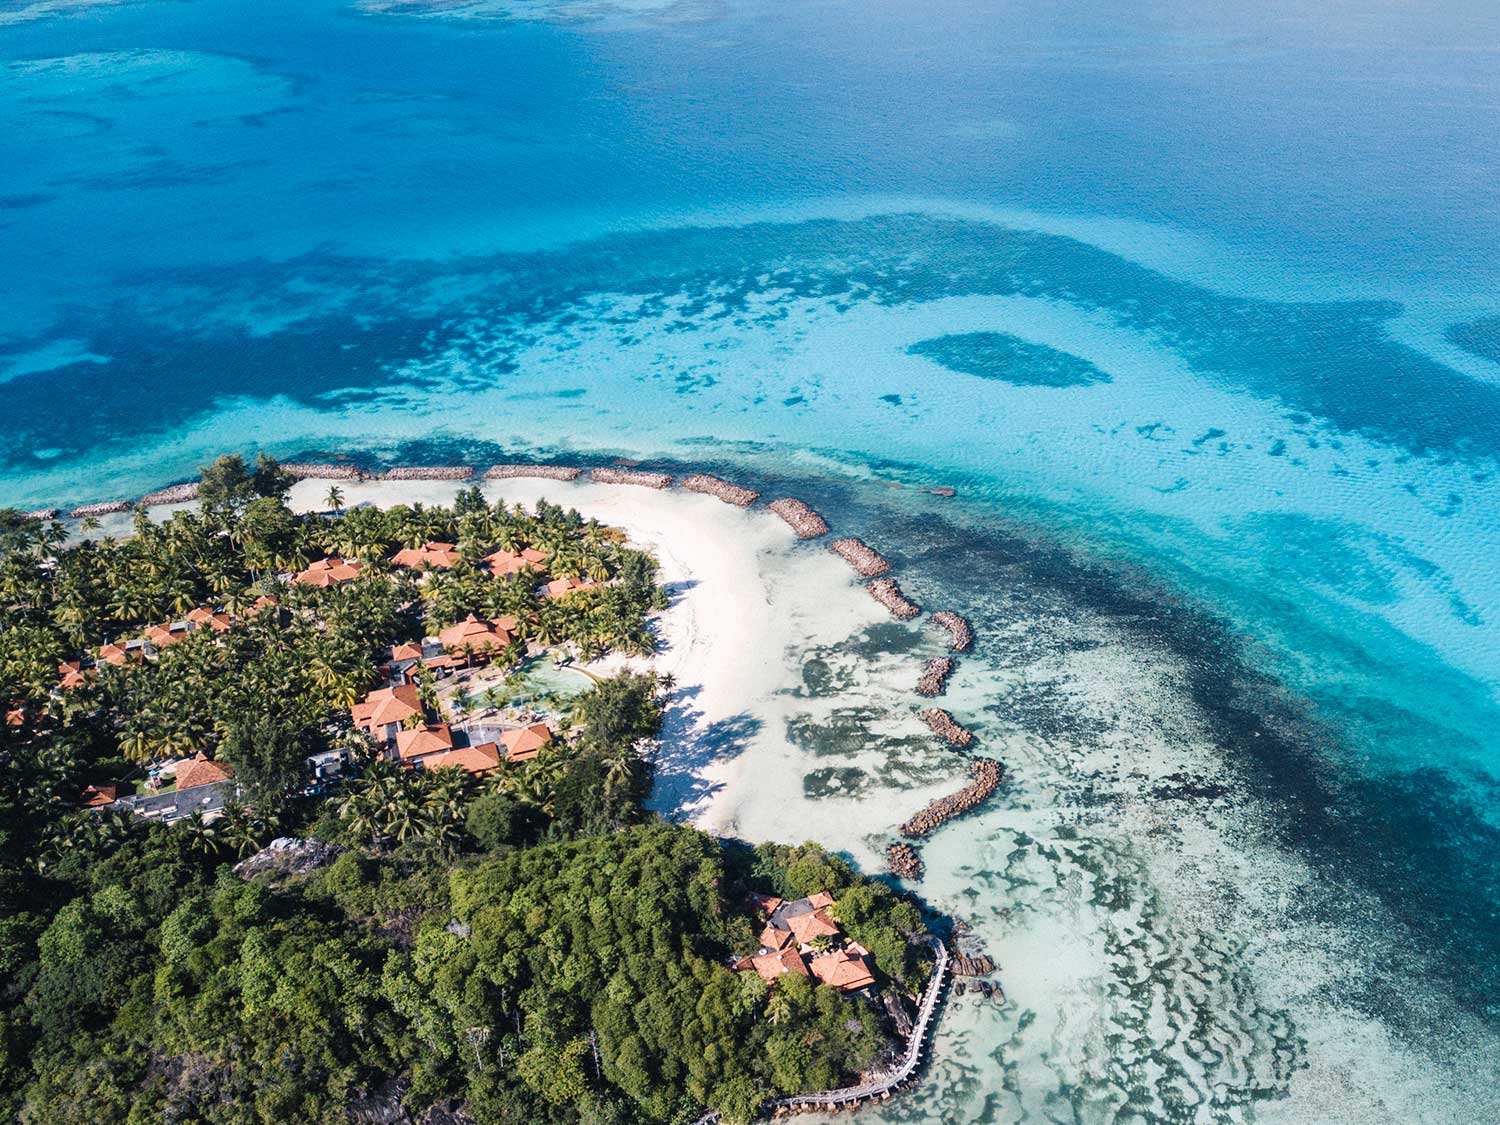 An aerial photo of an island beach resort by the ocean.